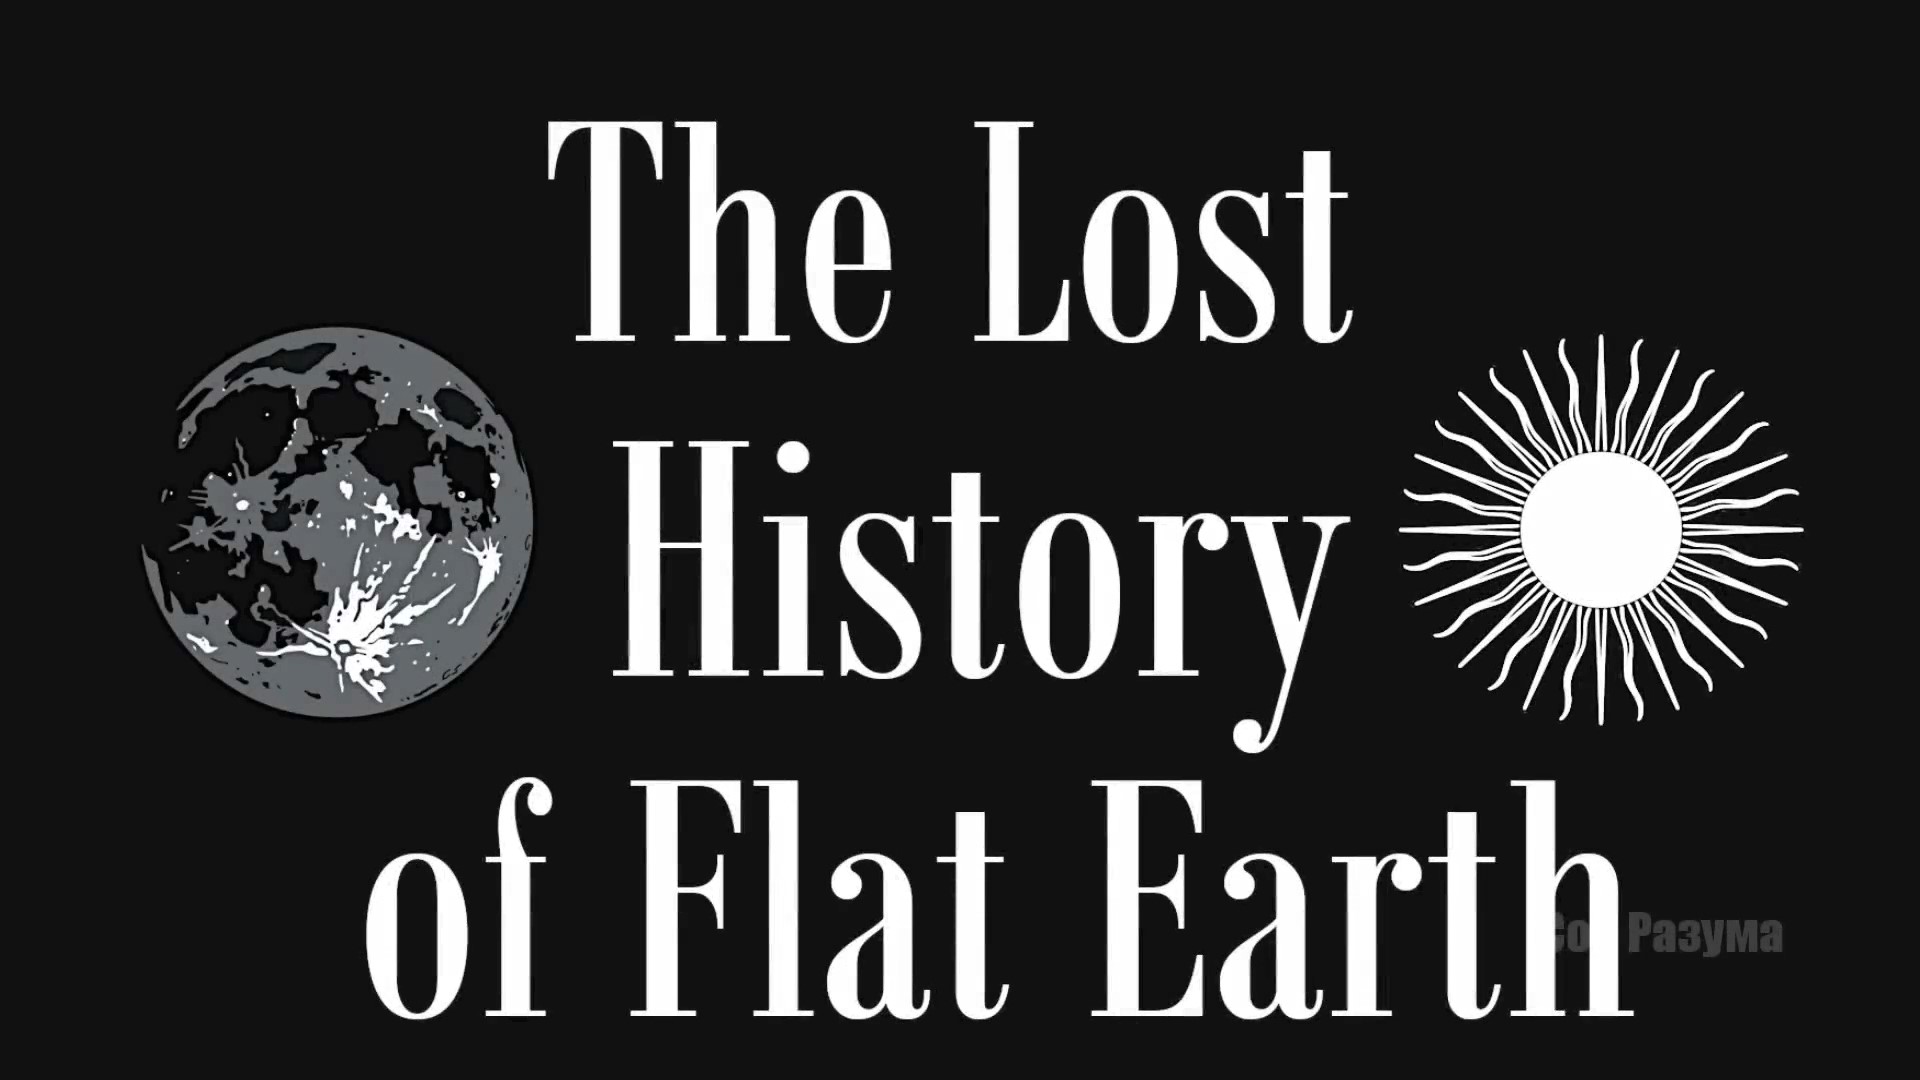 Потерянная История Плоской Земли (Том № 2, часть 4)